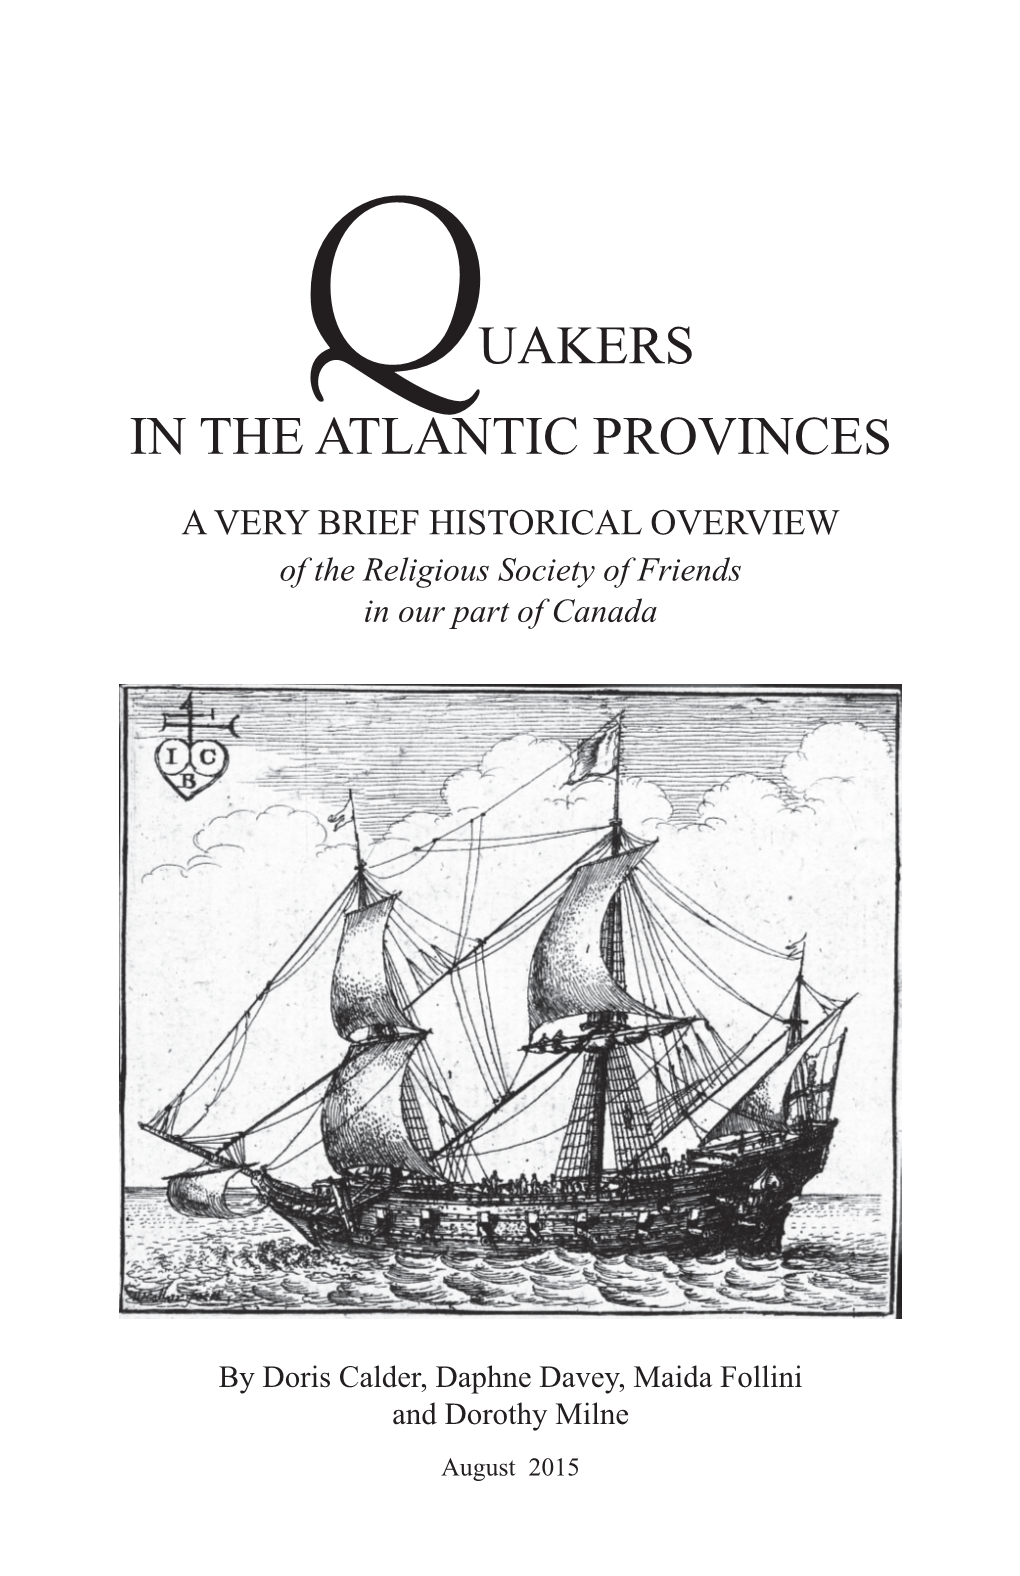 Quakers in the Atlantic Provinces